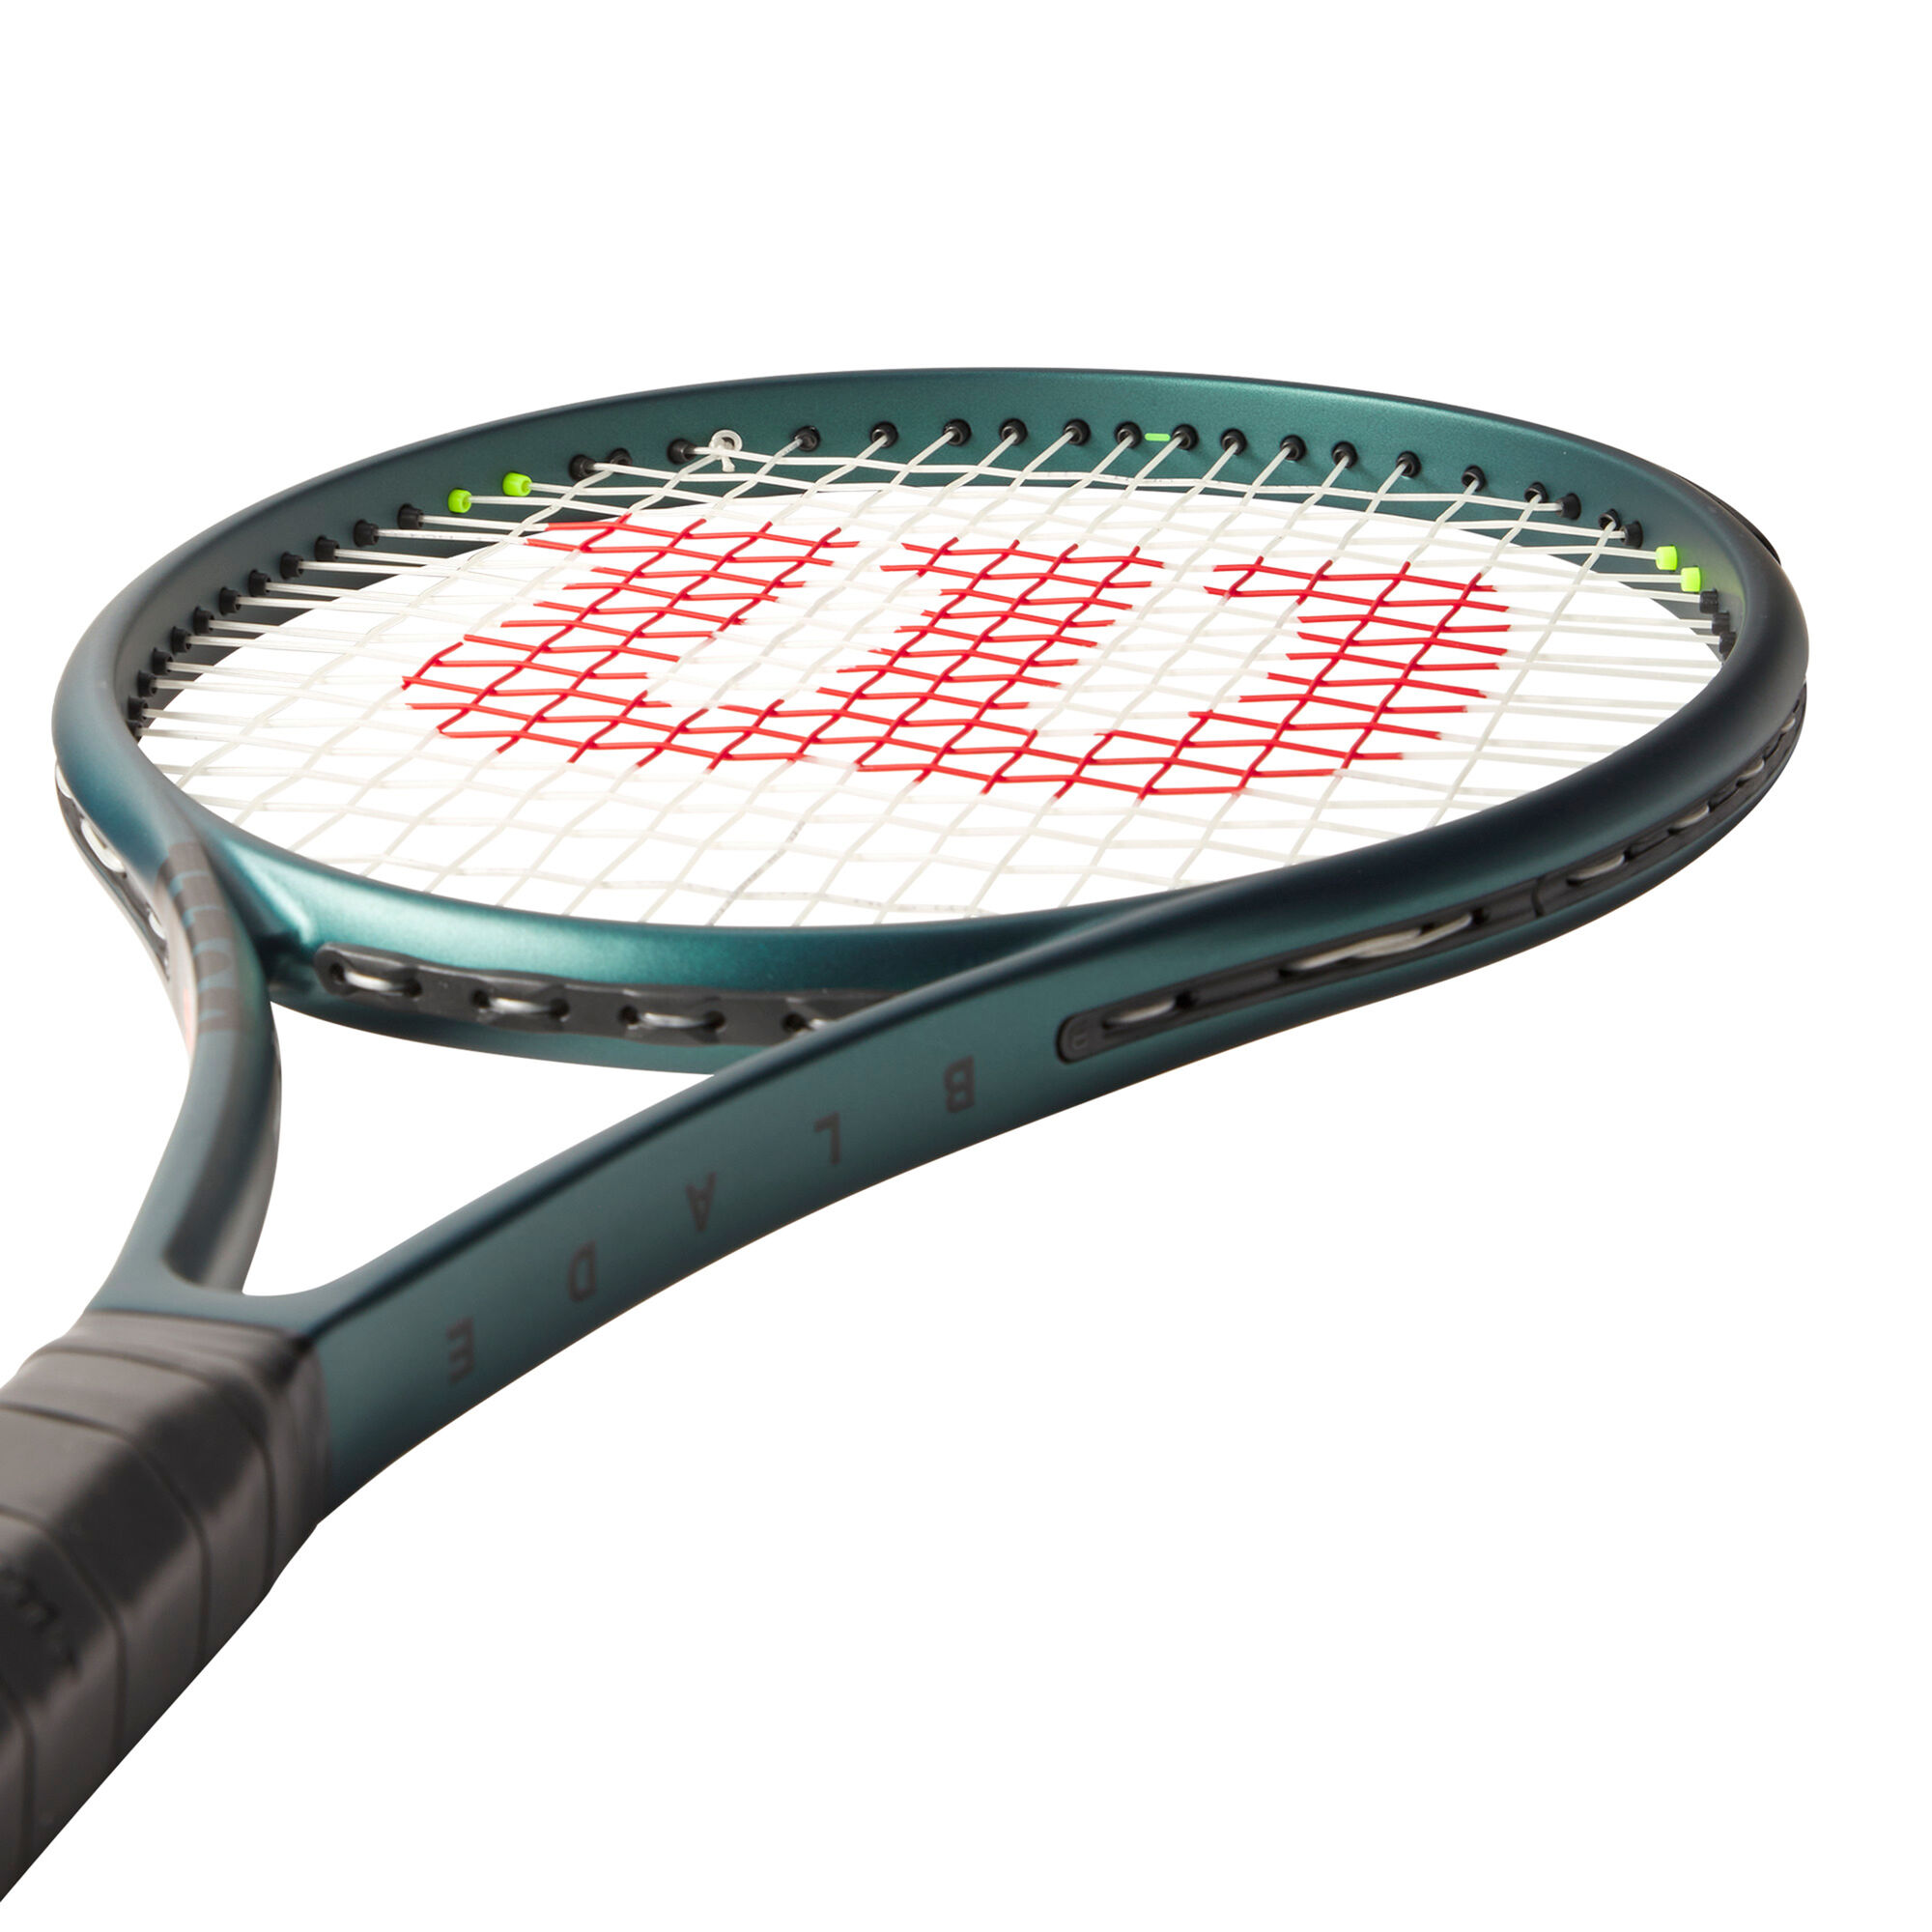 Head, Babolat, Wilson: ¿Qué raqueta de tenis comprar?